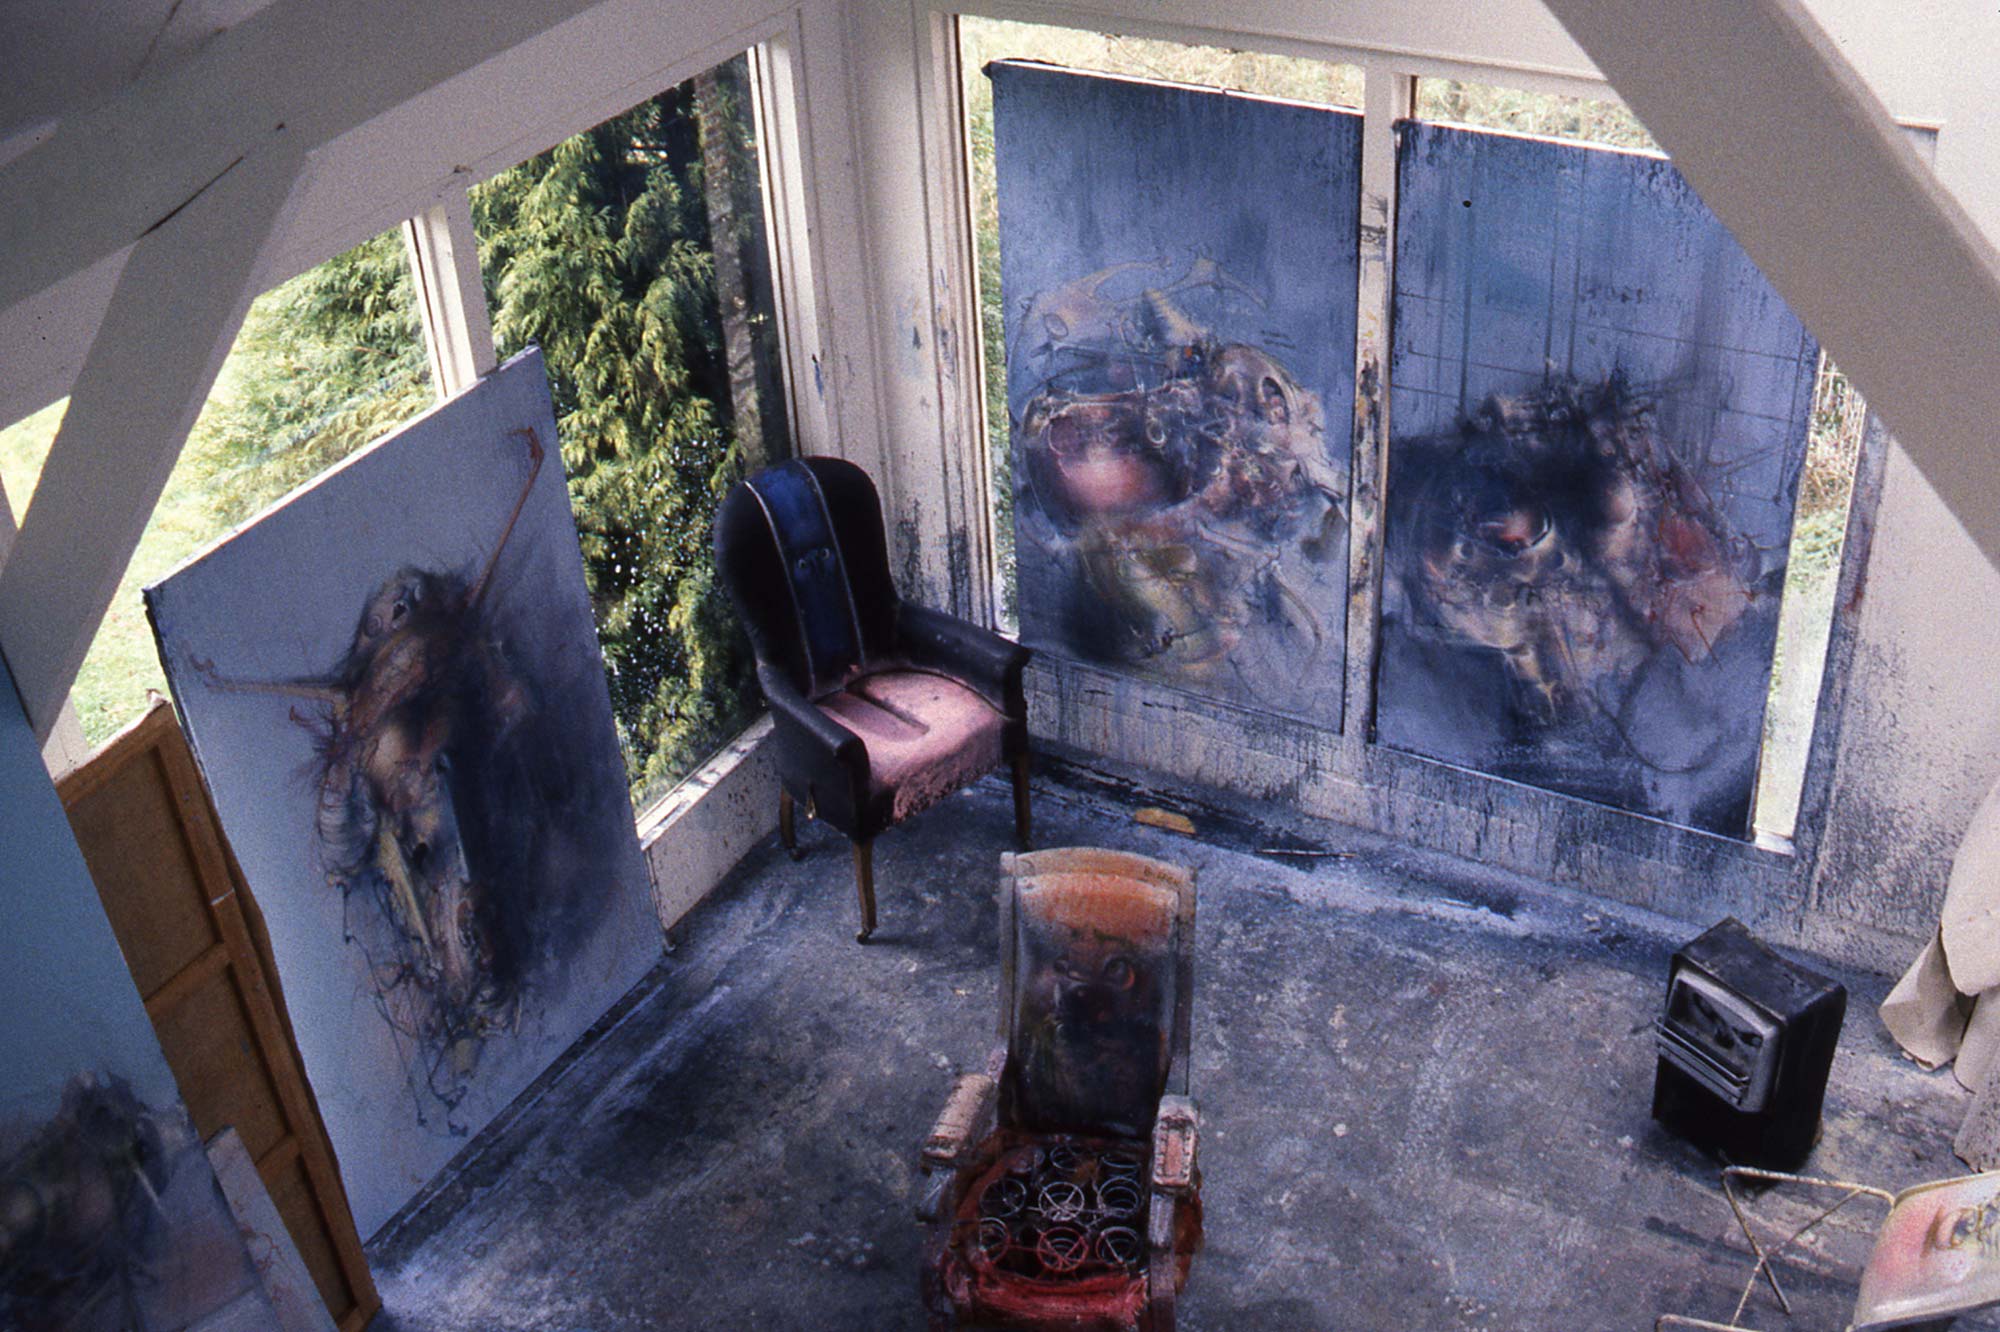 Dado’s studio in Hérouval in 1986